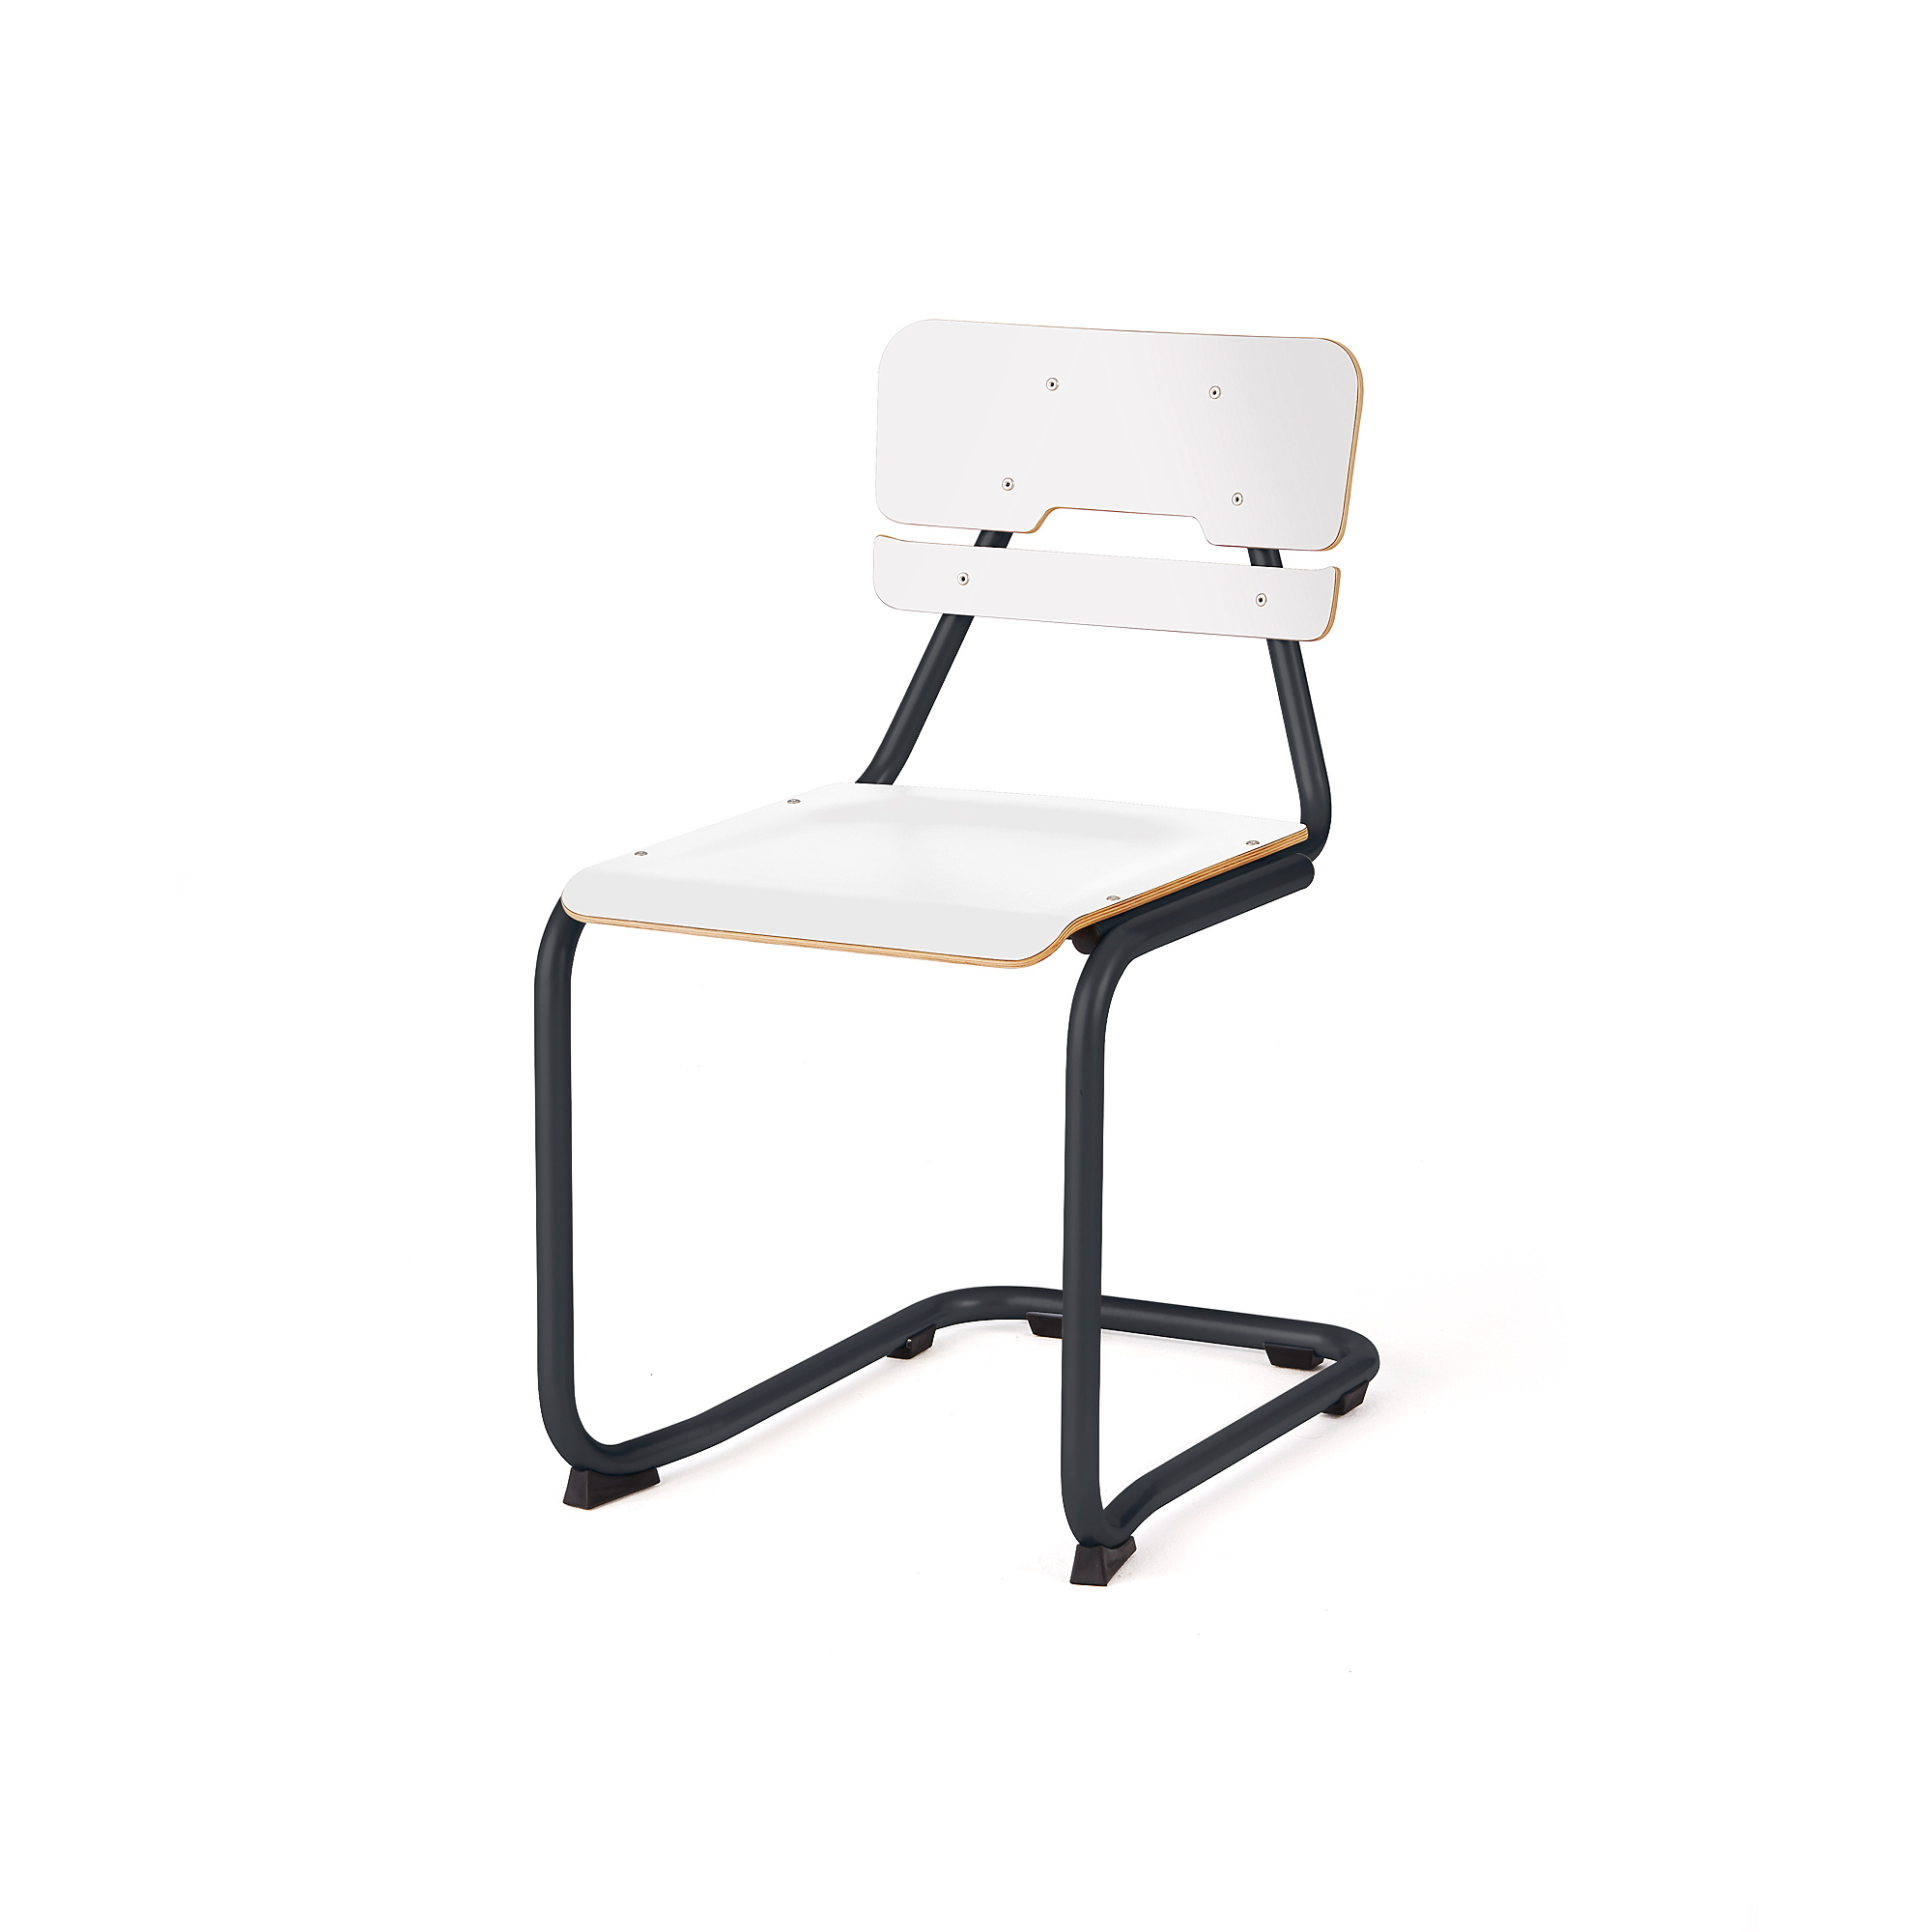 Školní židle LEGERE II, výška 450 mm, antracitově šedá, bílá